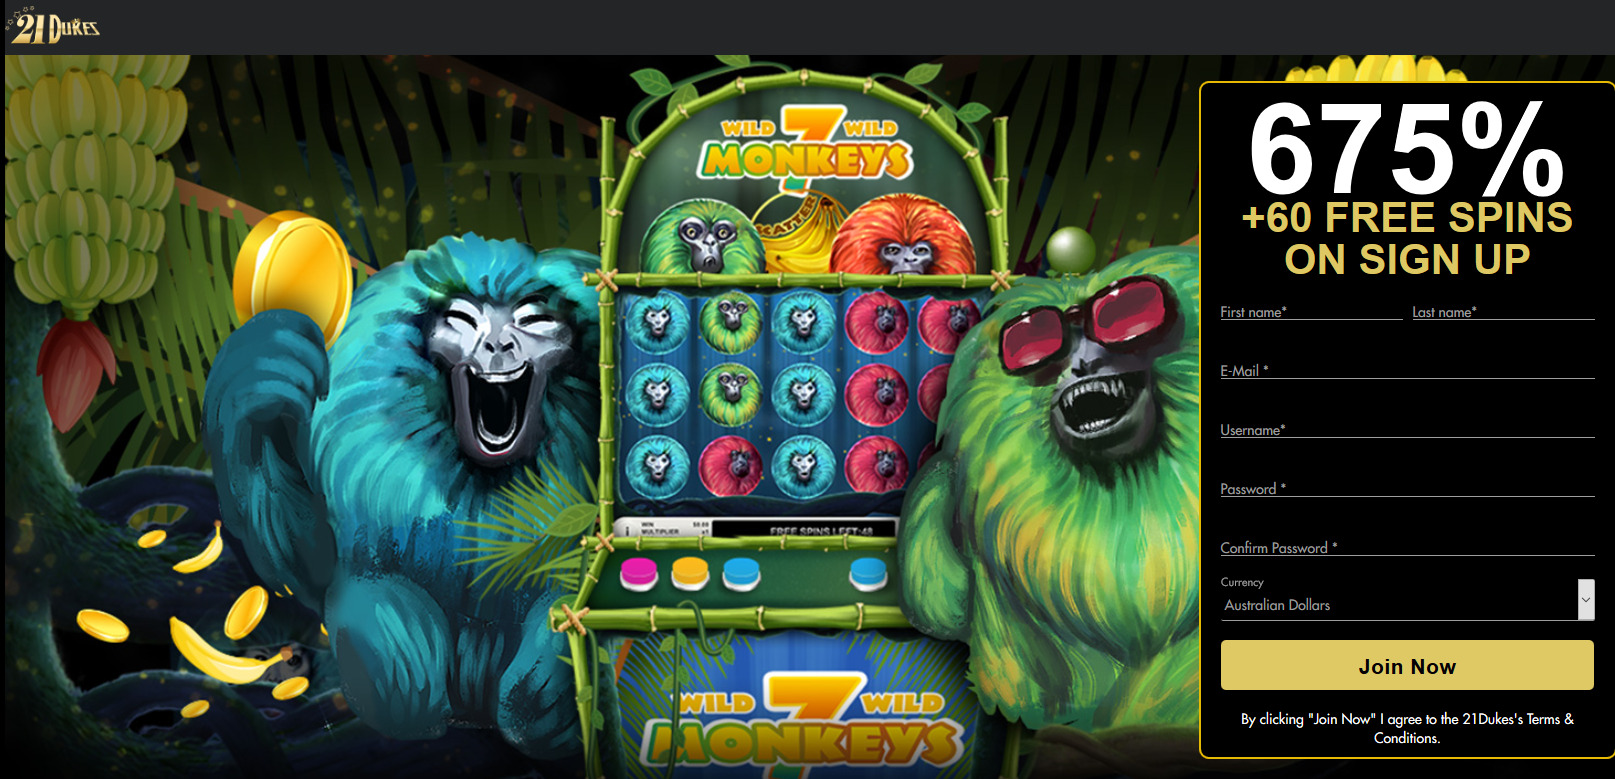 21Dukes Casino - 675% + 60 free spins. Game: 7 Monkeys